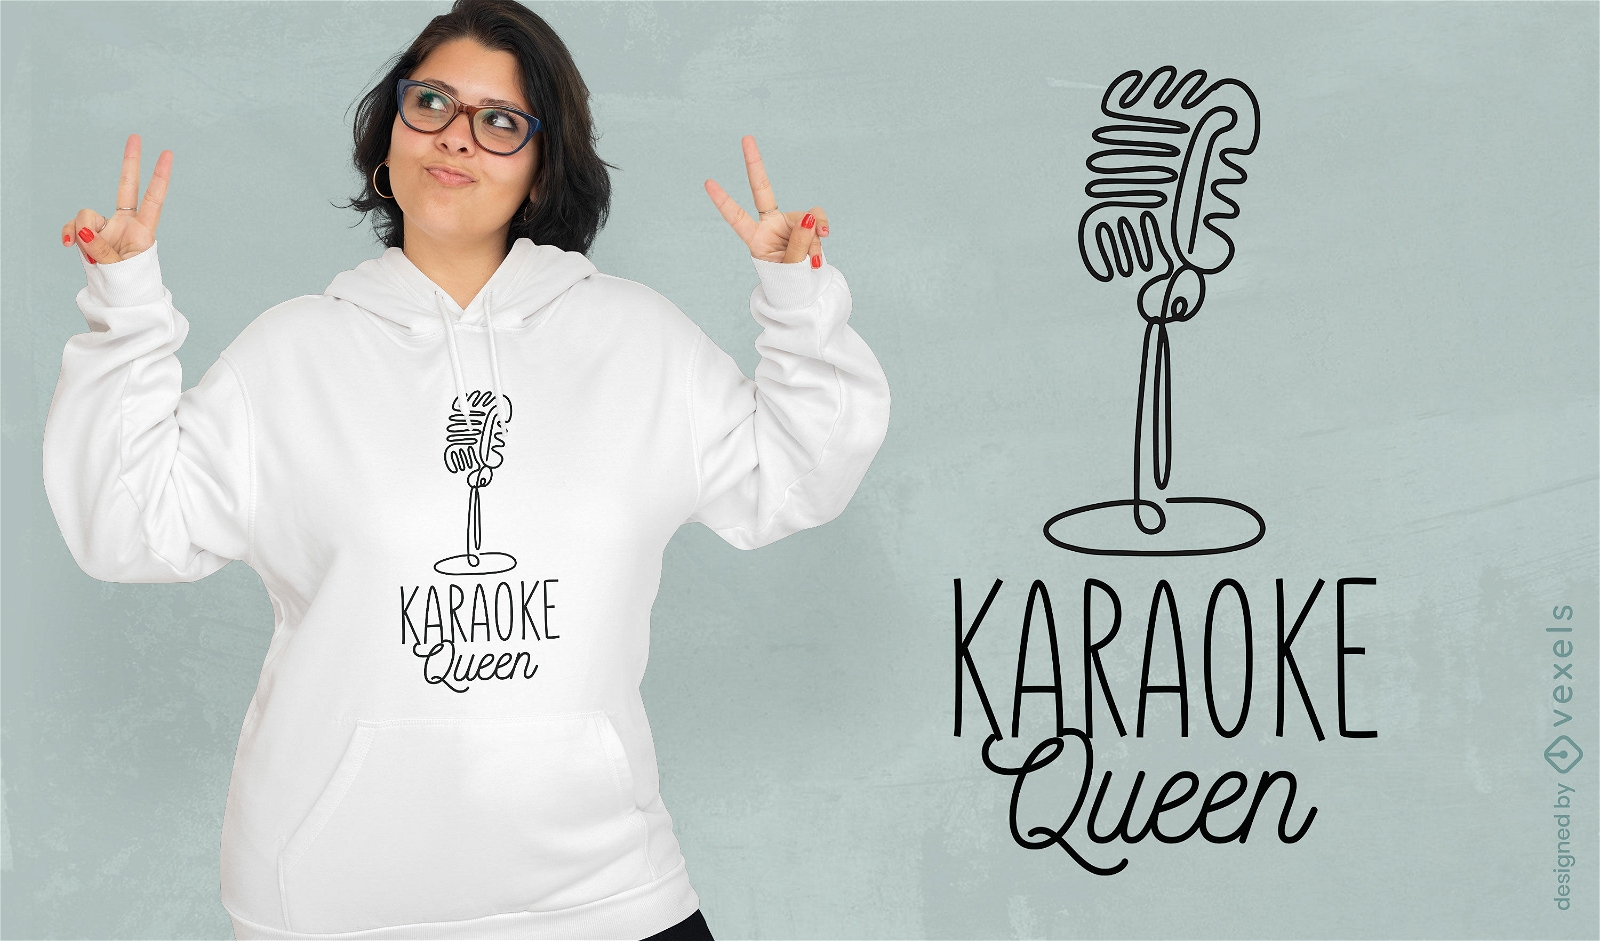 Karaoke queen t-shirt design